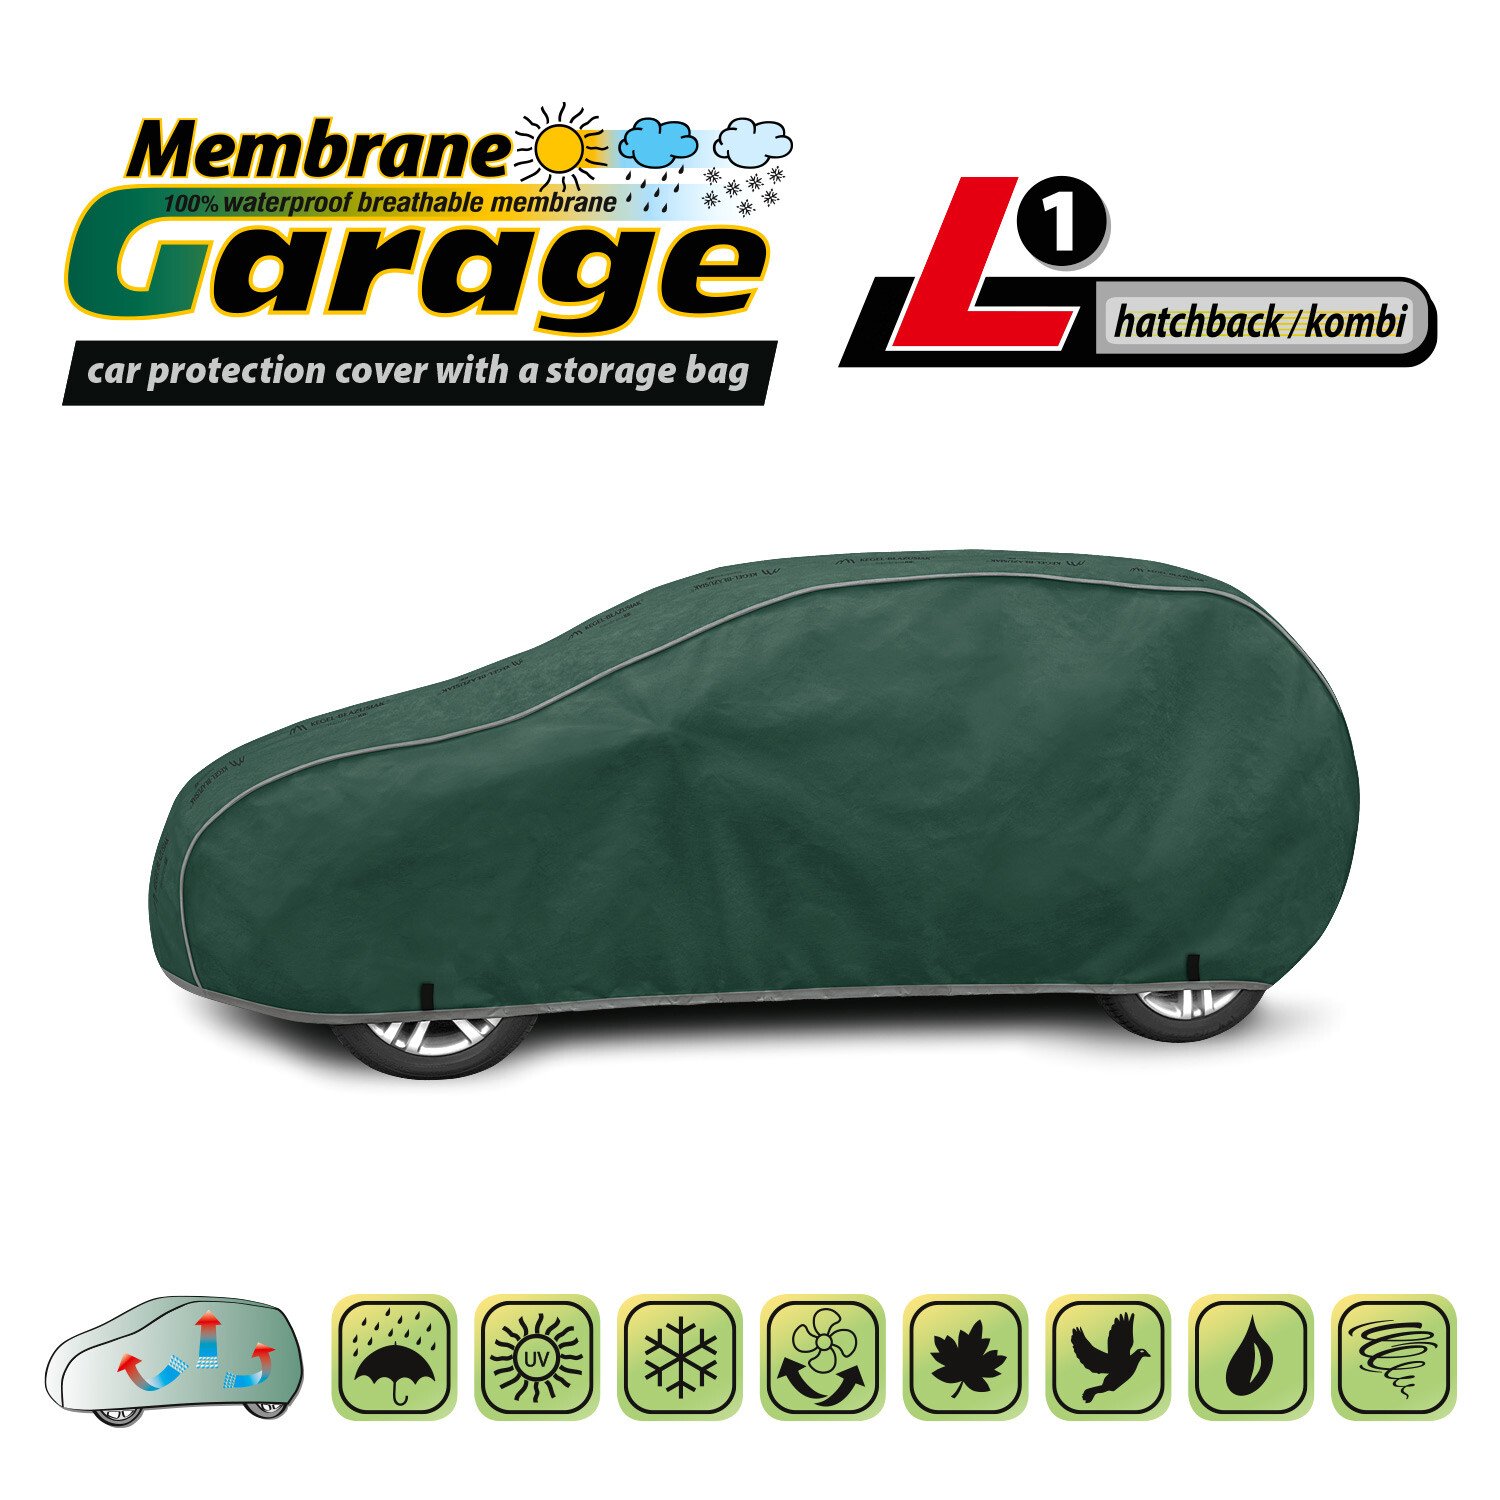 Membrane Garage komplet autótakaró ponyva, teljesen vízálló és légáteresztő - L1 - Hatchback/Kombi thumb